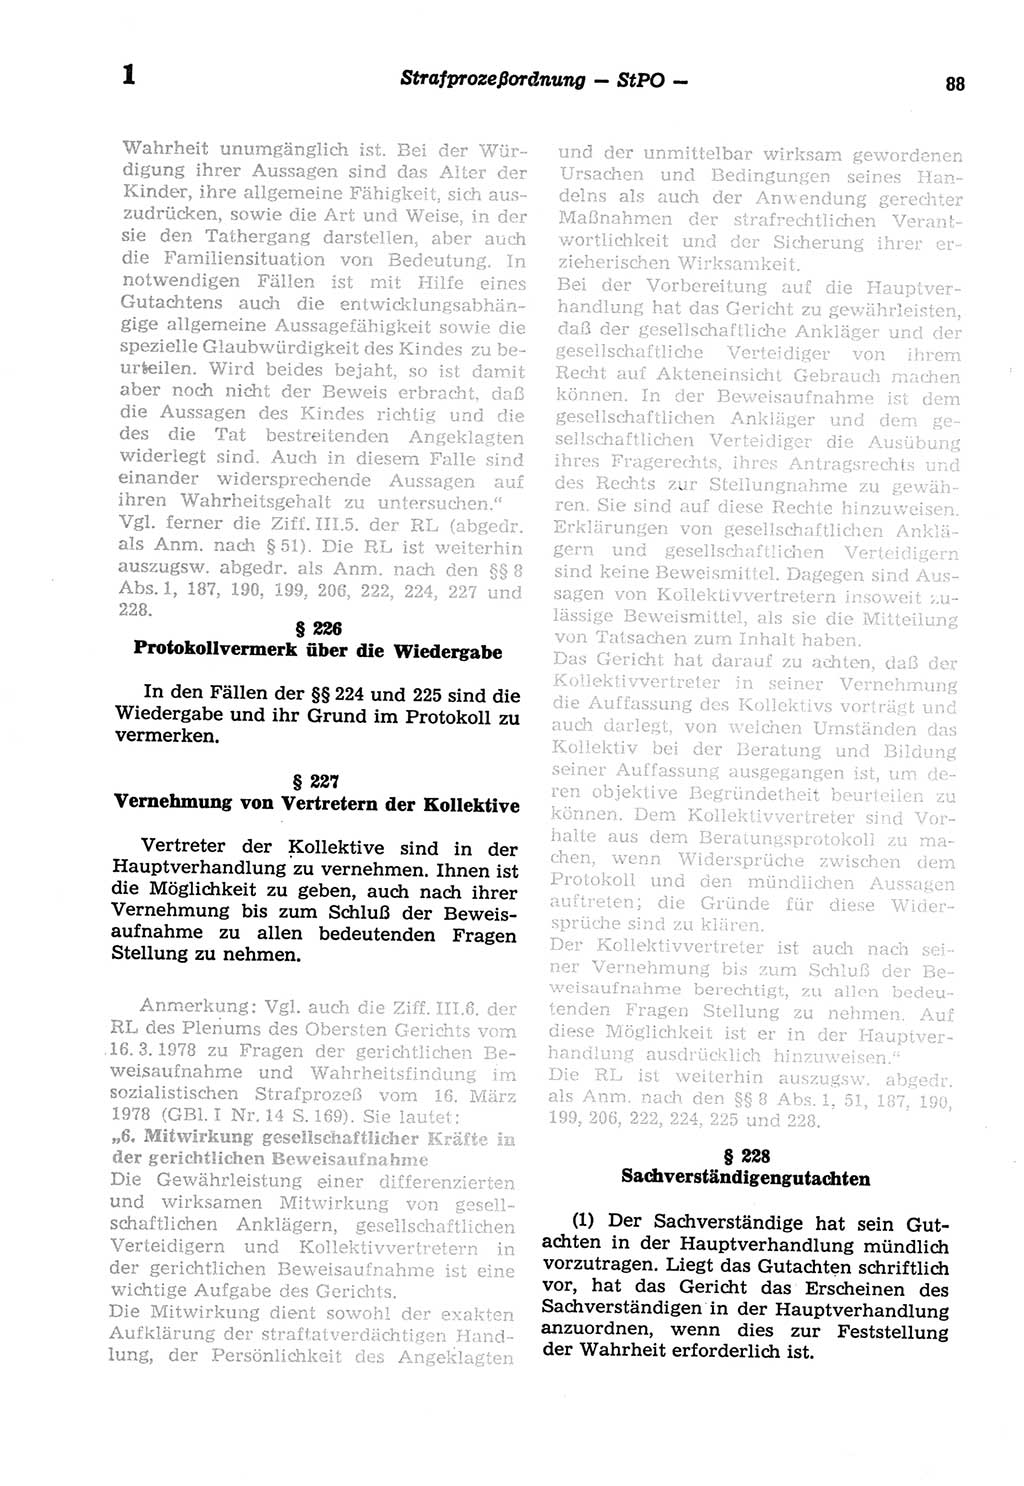 Strafprozeßordnung (StPO) der Deutschen Demokratischen Republik (DDR) sowie angrenzende Gesetze und Bestimmungen 1977, Seite 88 (StPO DDR Ges. Best. 1977, S. 88)